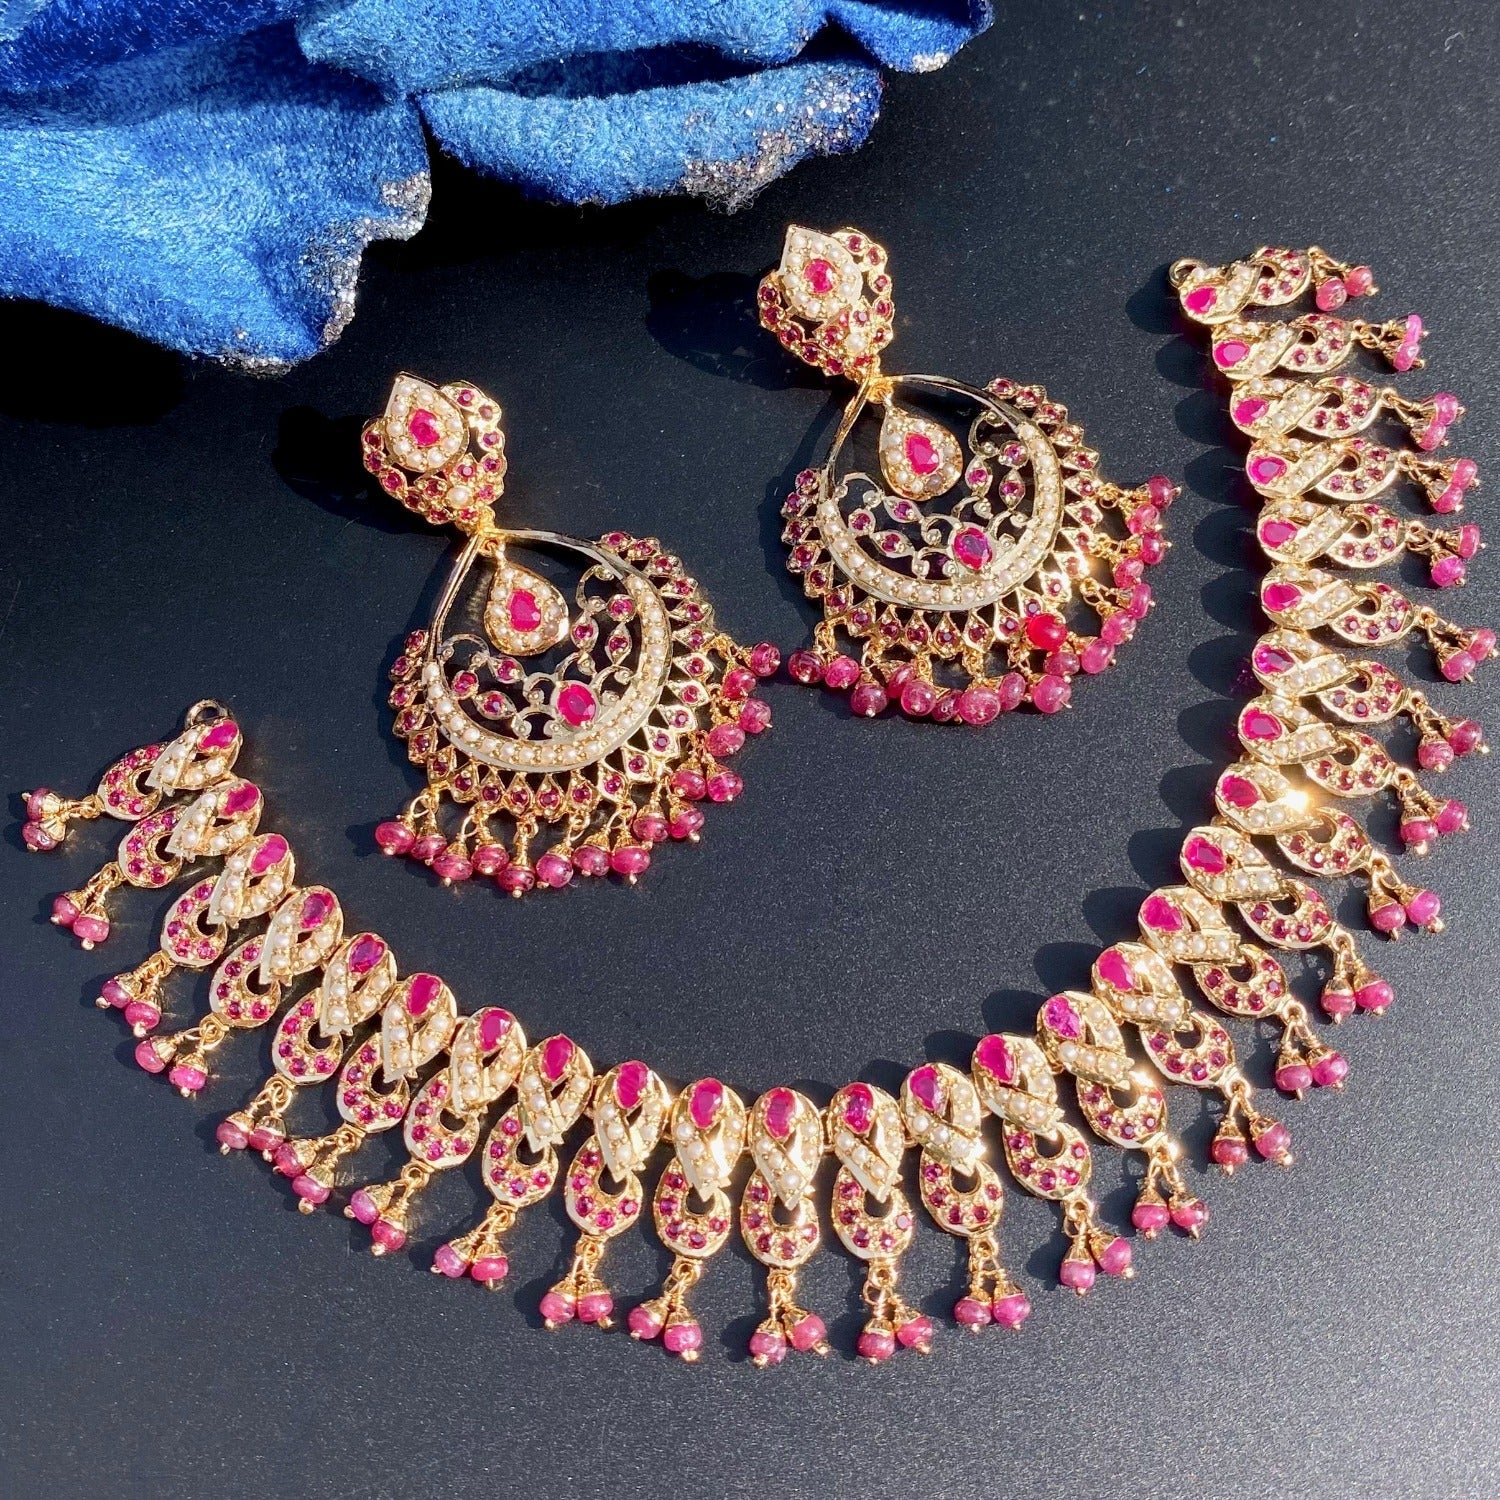 ruby necklace set